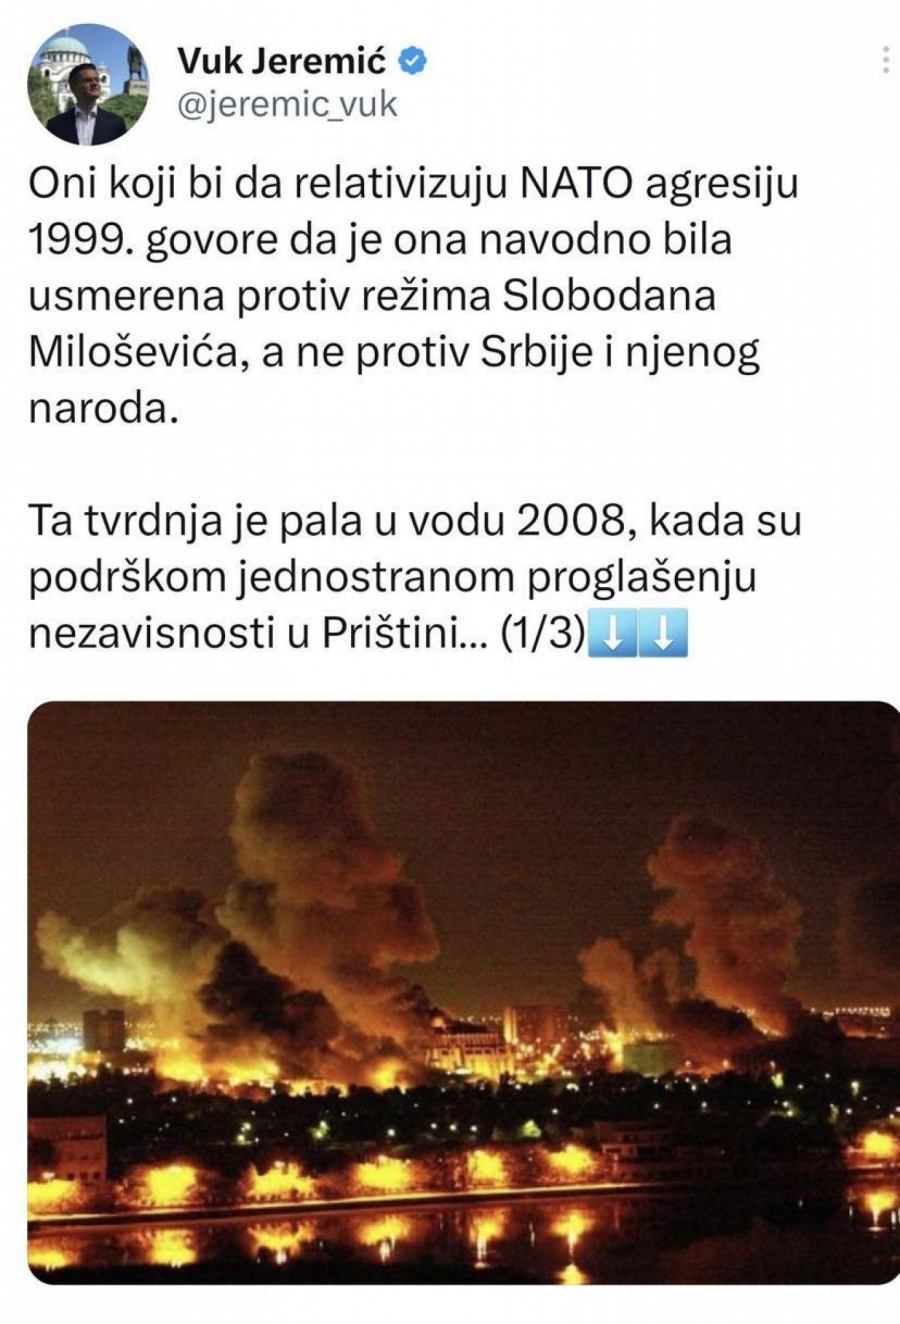 NE ZNA NI KAKO SRBIJA IZGLEDA! Skandal! Jeremić objavio slike Bagdada, tvrdi da je Beograd! (FOTO)